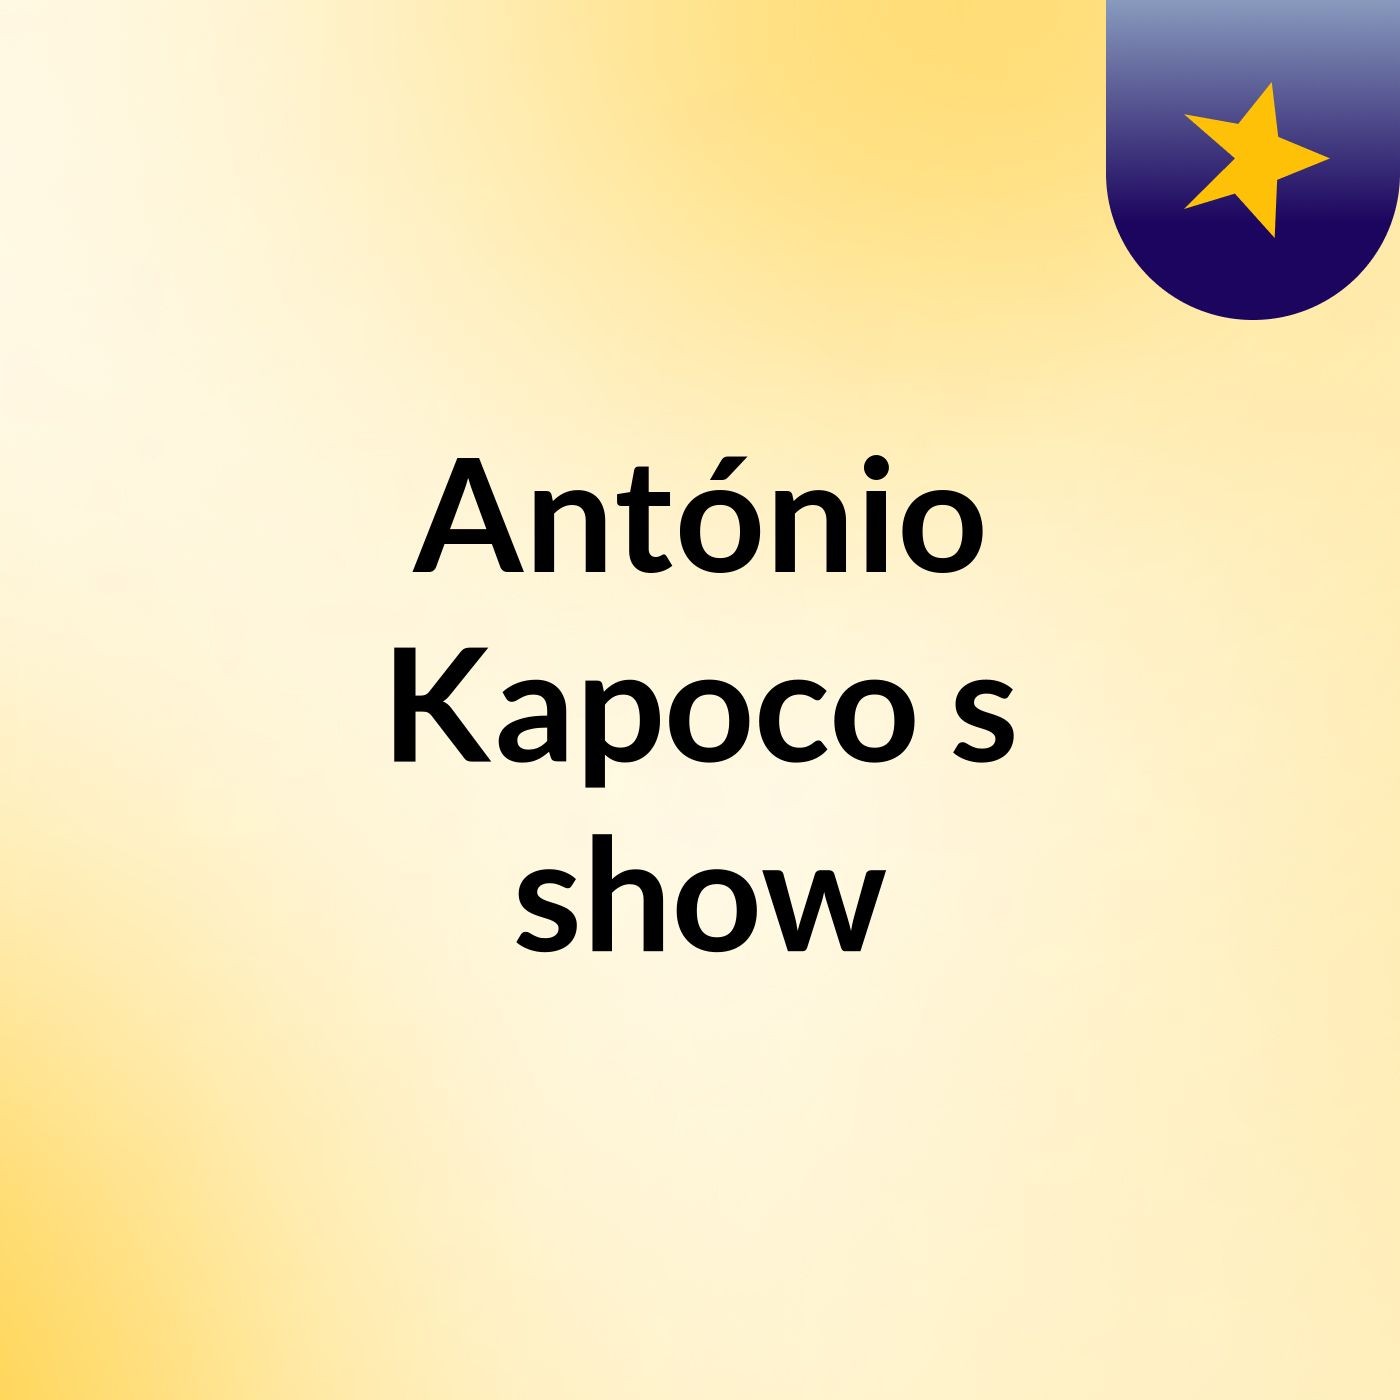 António Kapoco's show